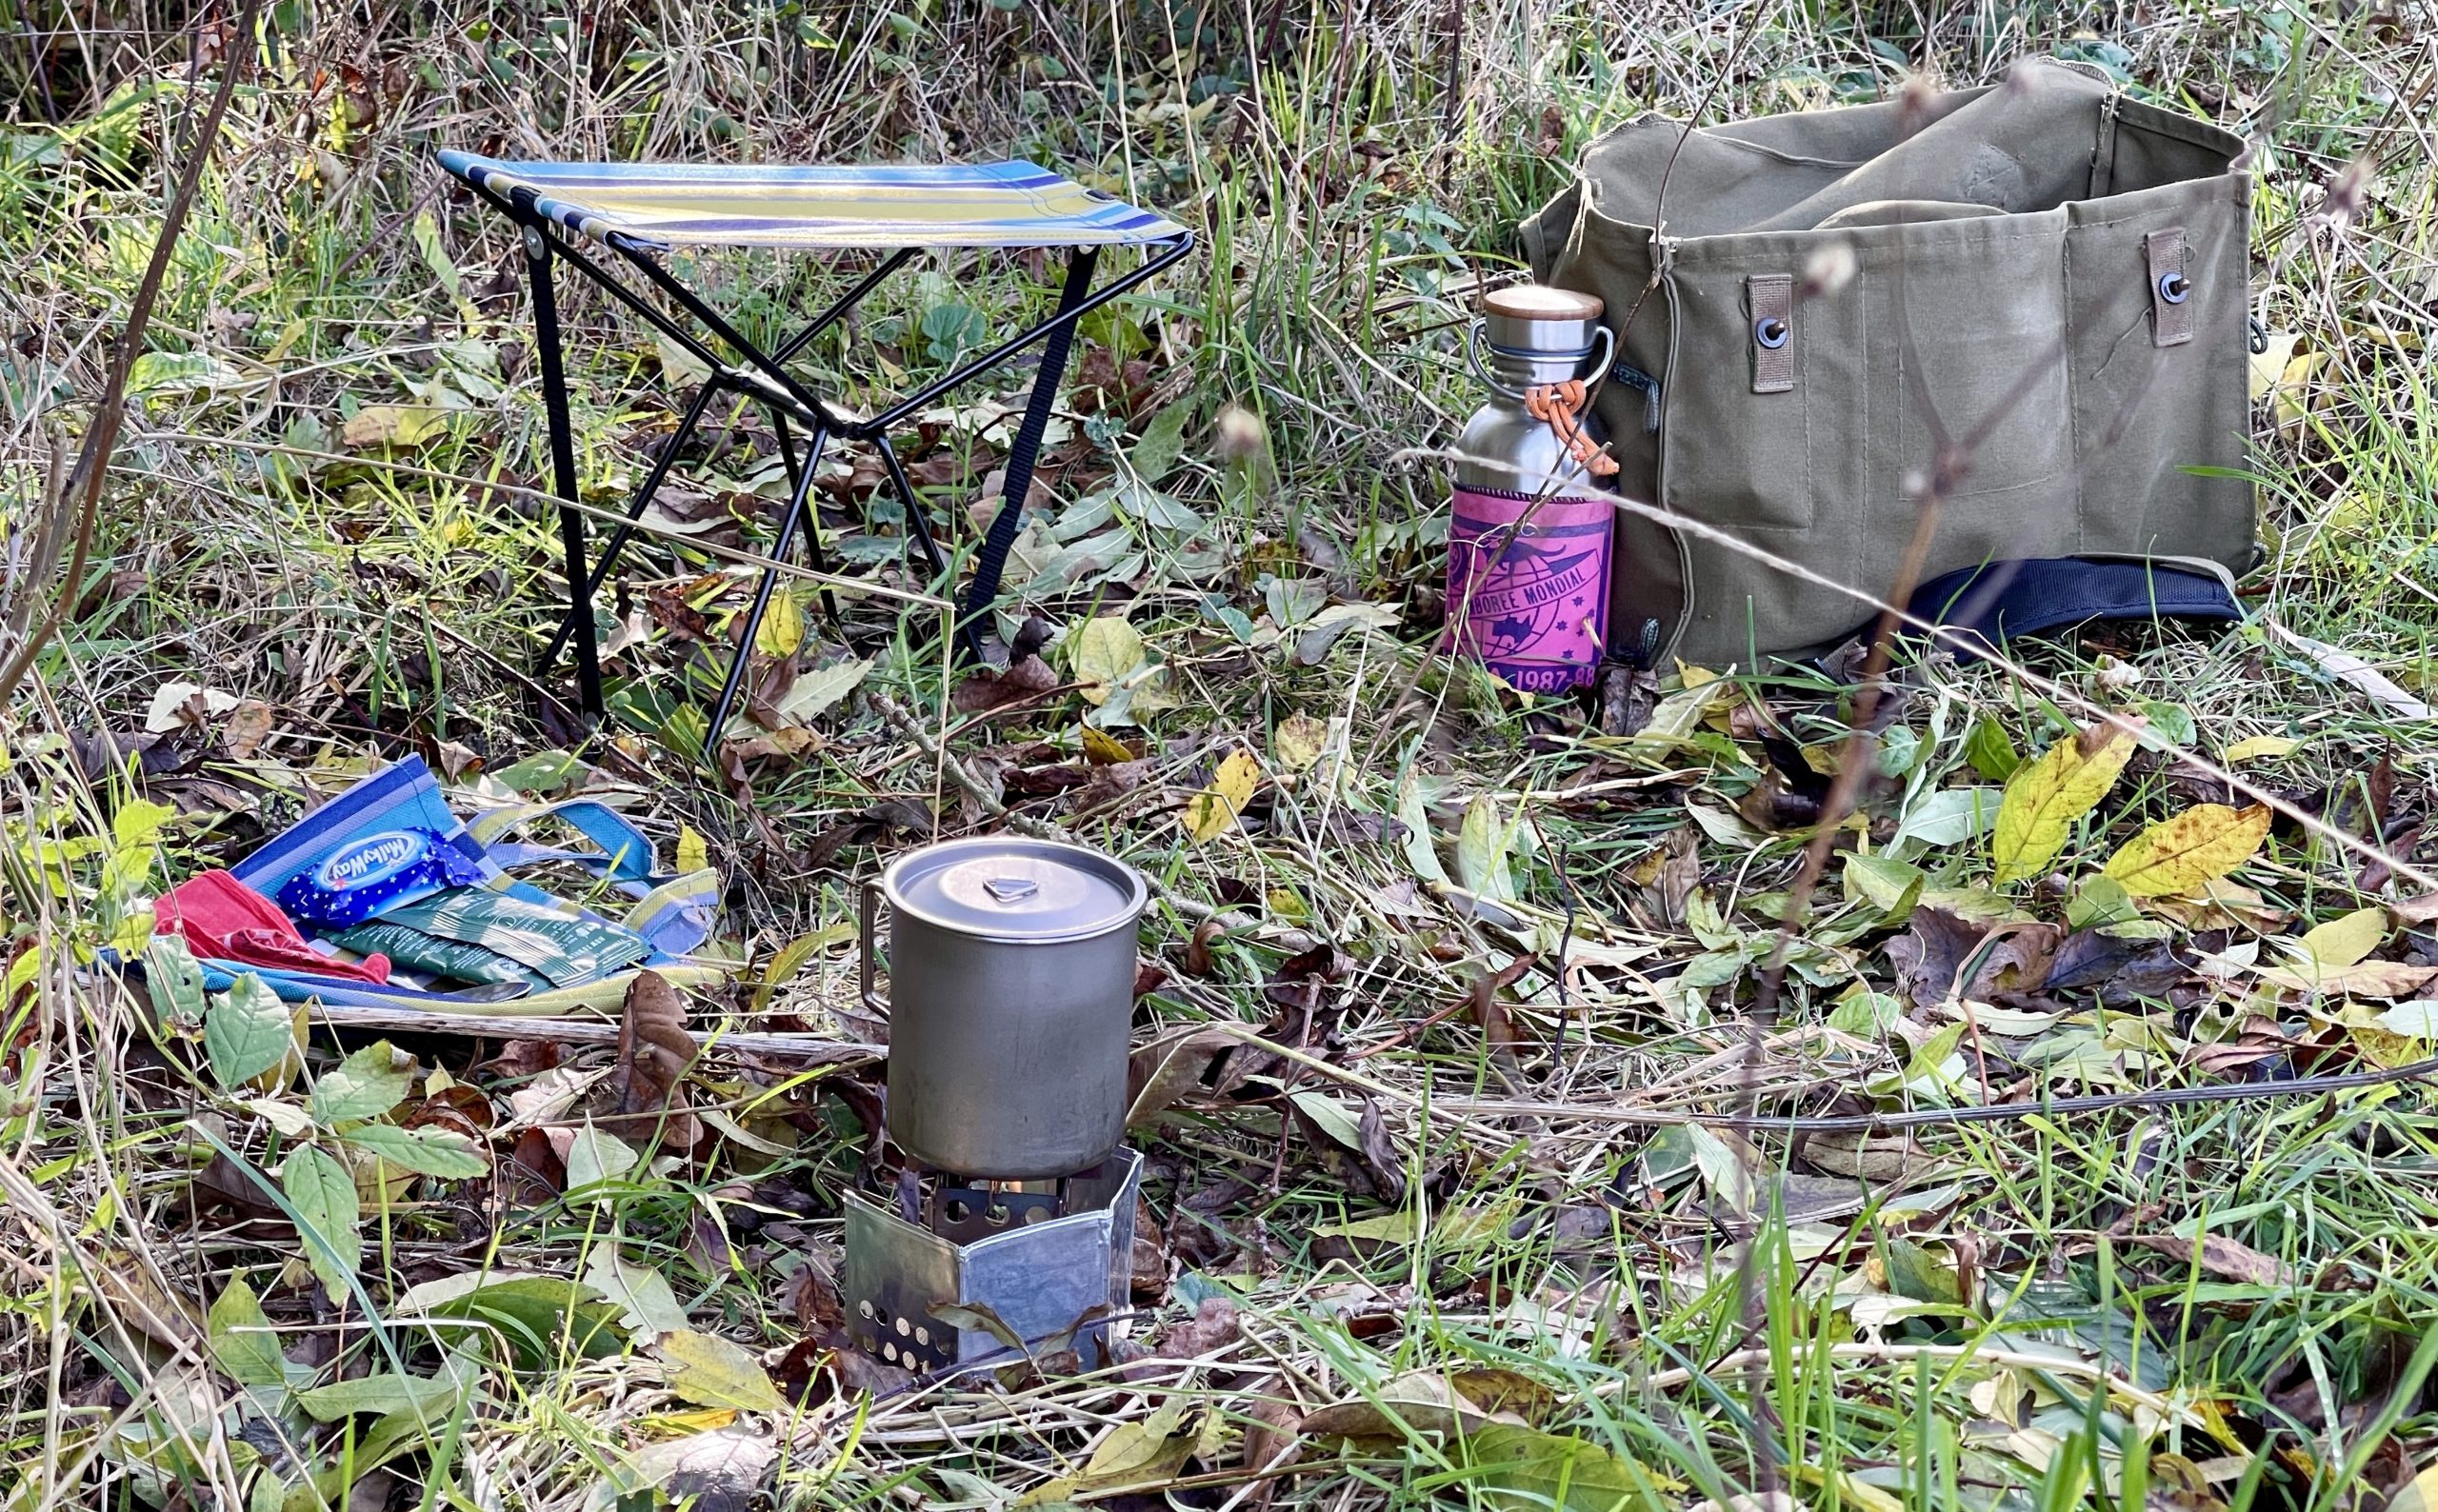 Lightweight bushcraft cooking gear in a Finnish haversack